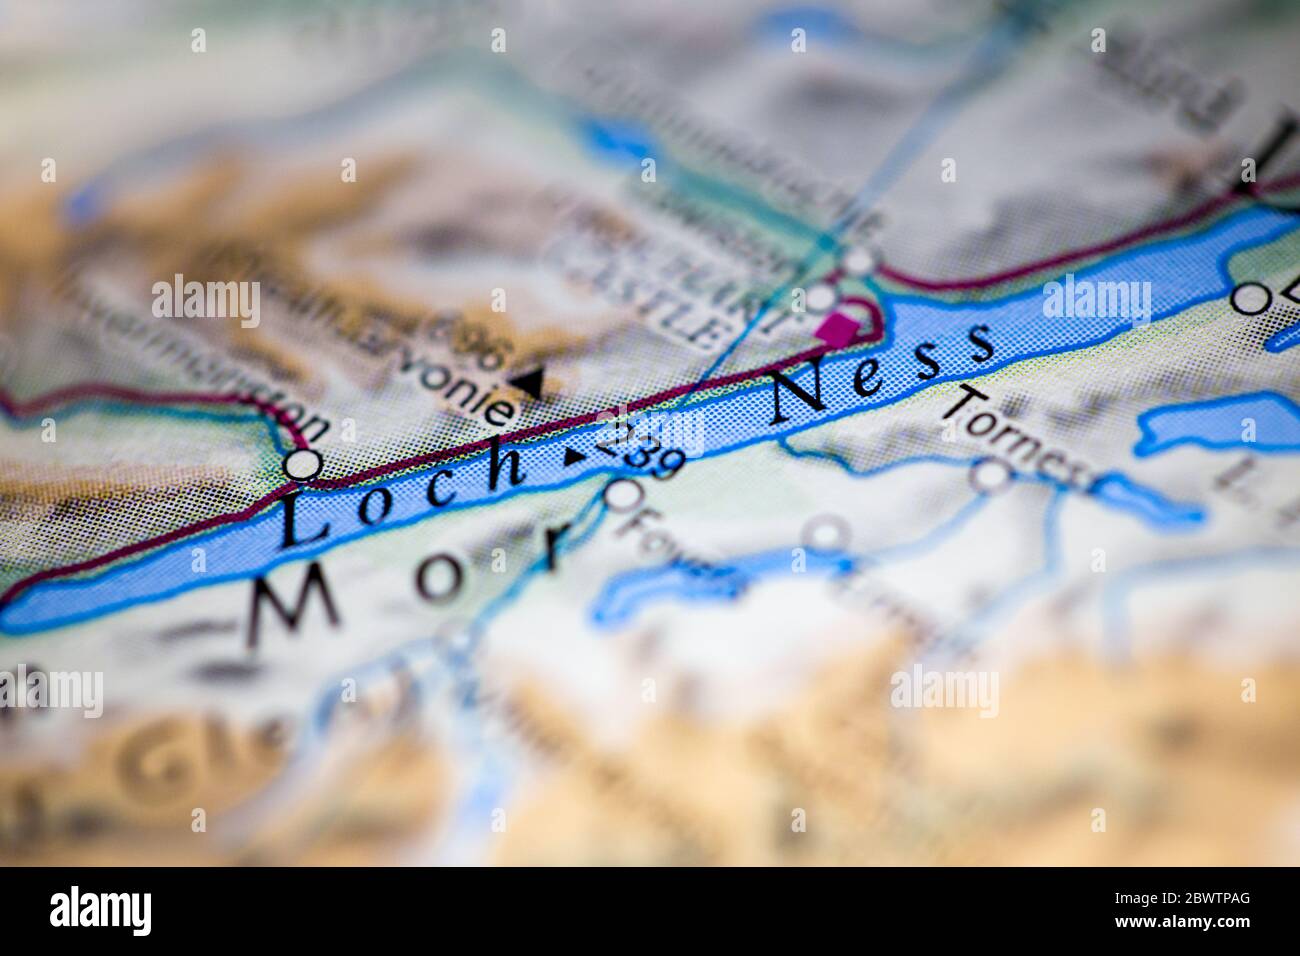 Faible profondeur de champ accent sur la carte géographique emplacement du Loch Ness Ecosse Royaume-Uni Grande-Bretagne Europe continent sur atlas Banque D'Images